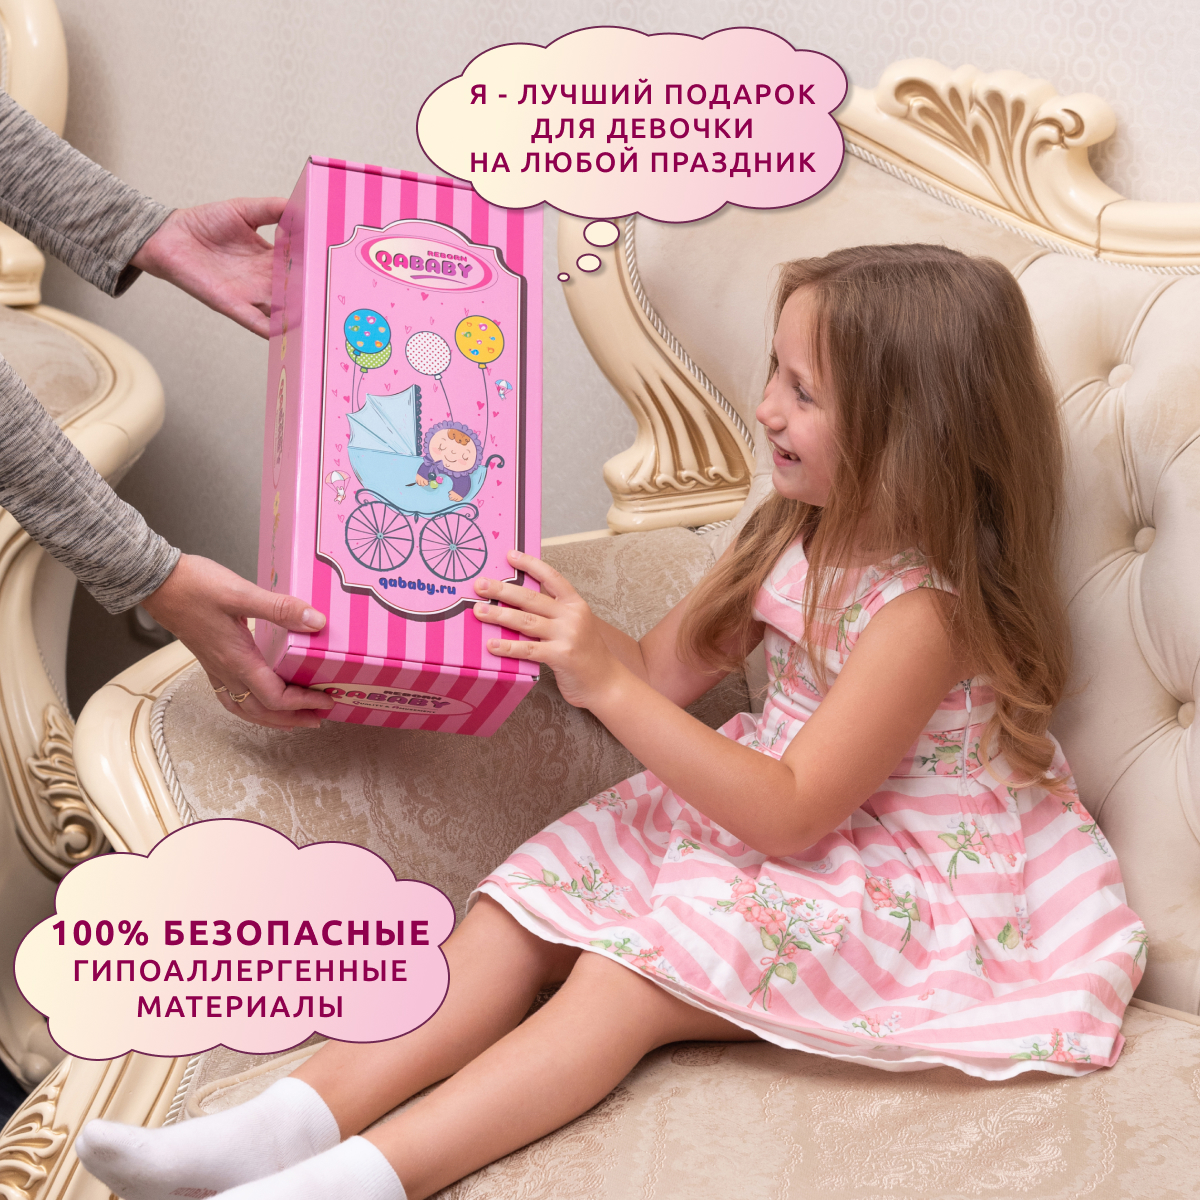 Кукла Реборн QA BABY Альбина девочка интерактивная Пупс набор игрушки для ванной для девочки 38 см 3805 - фото 11